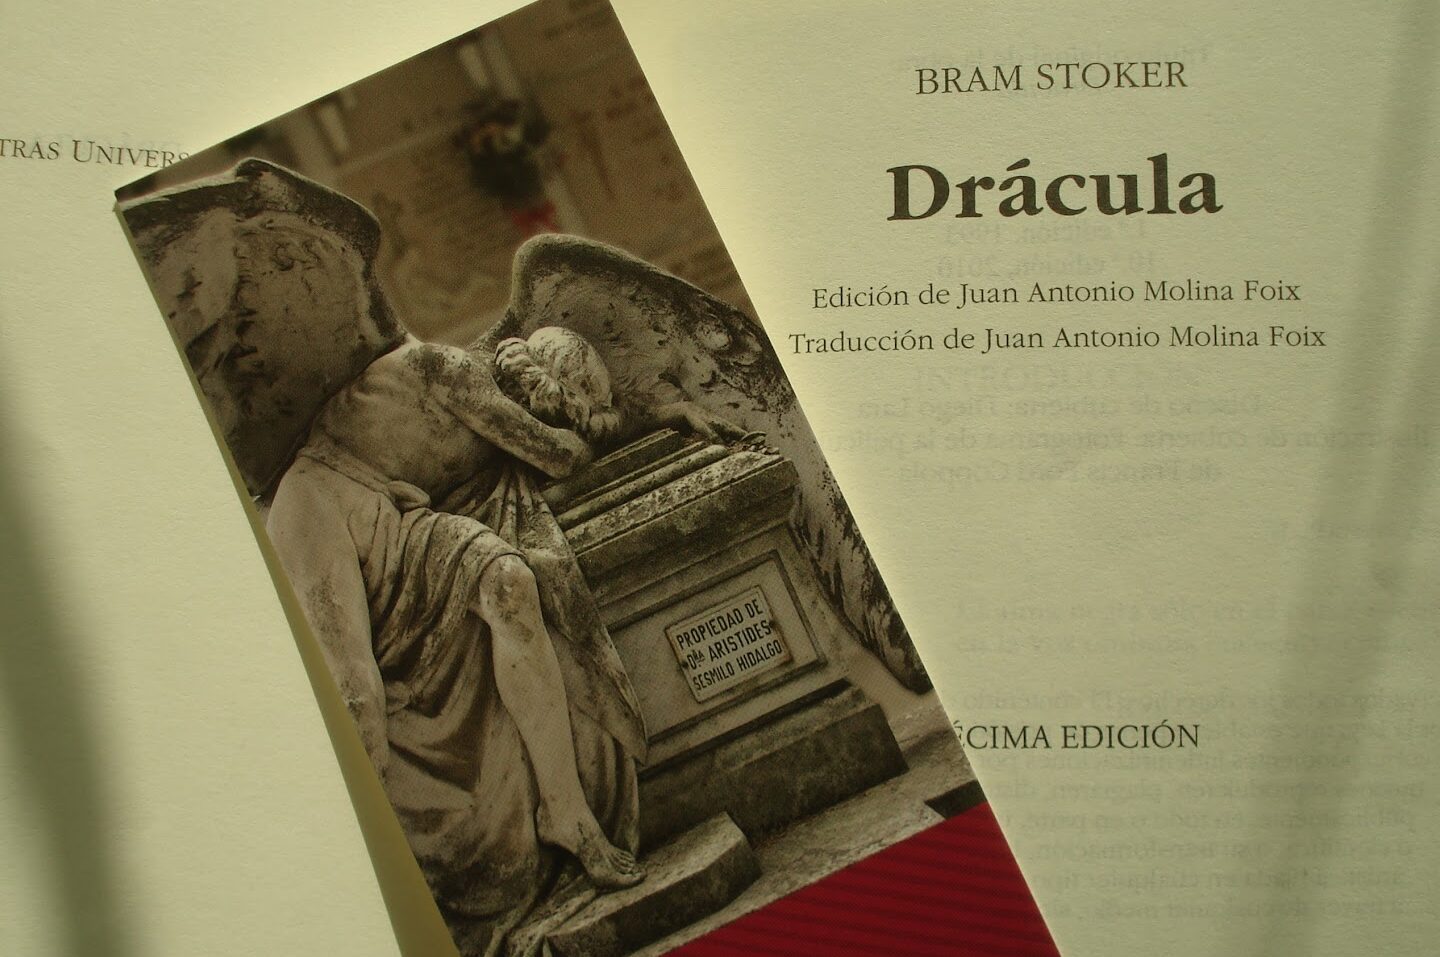 La influencia de Bram Stoker y su obra maestra Drácula en la literatura gótica